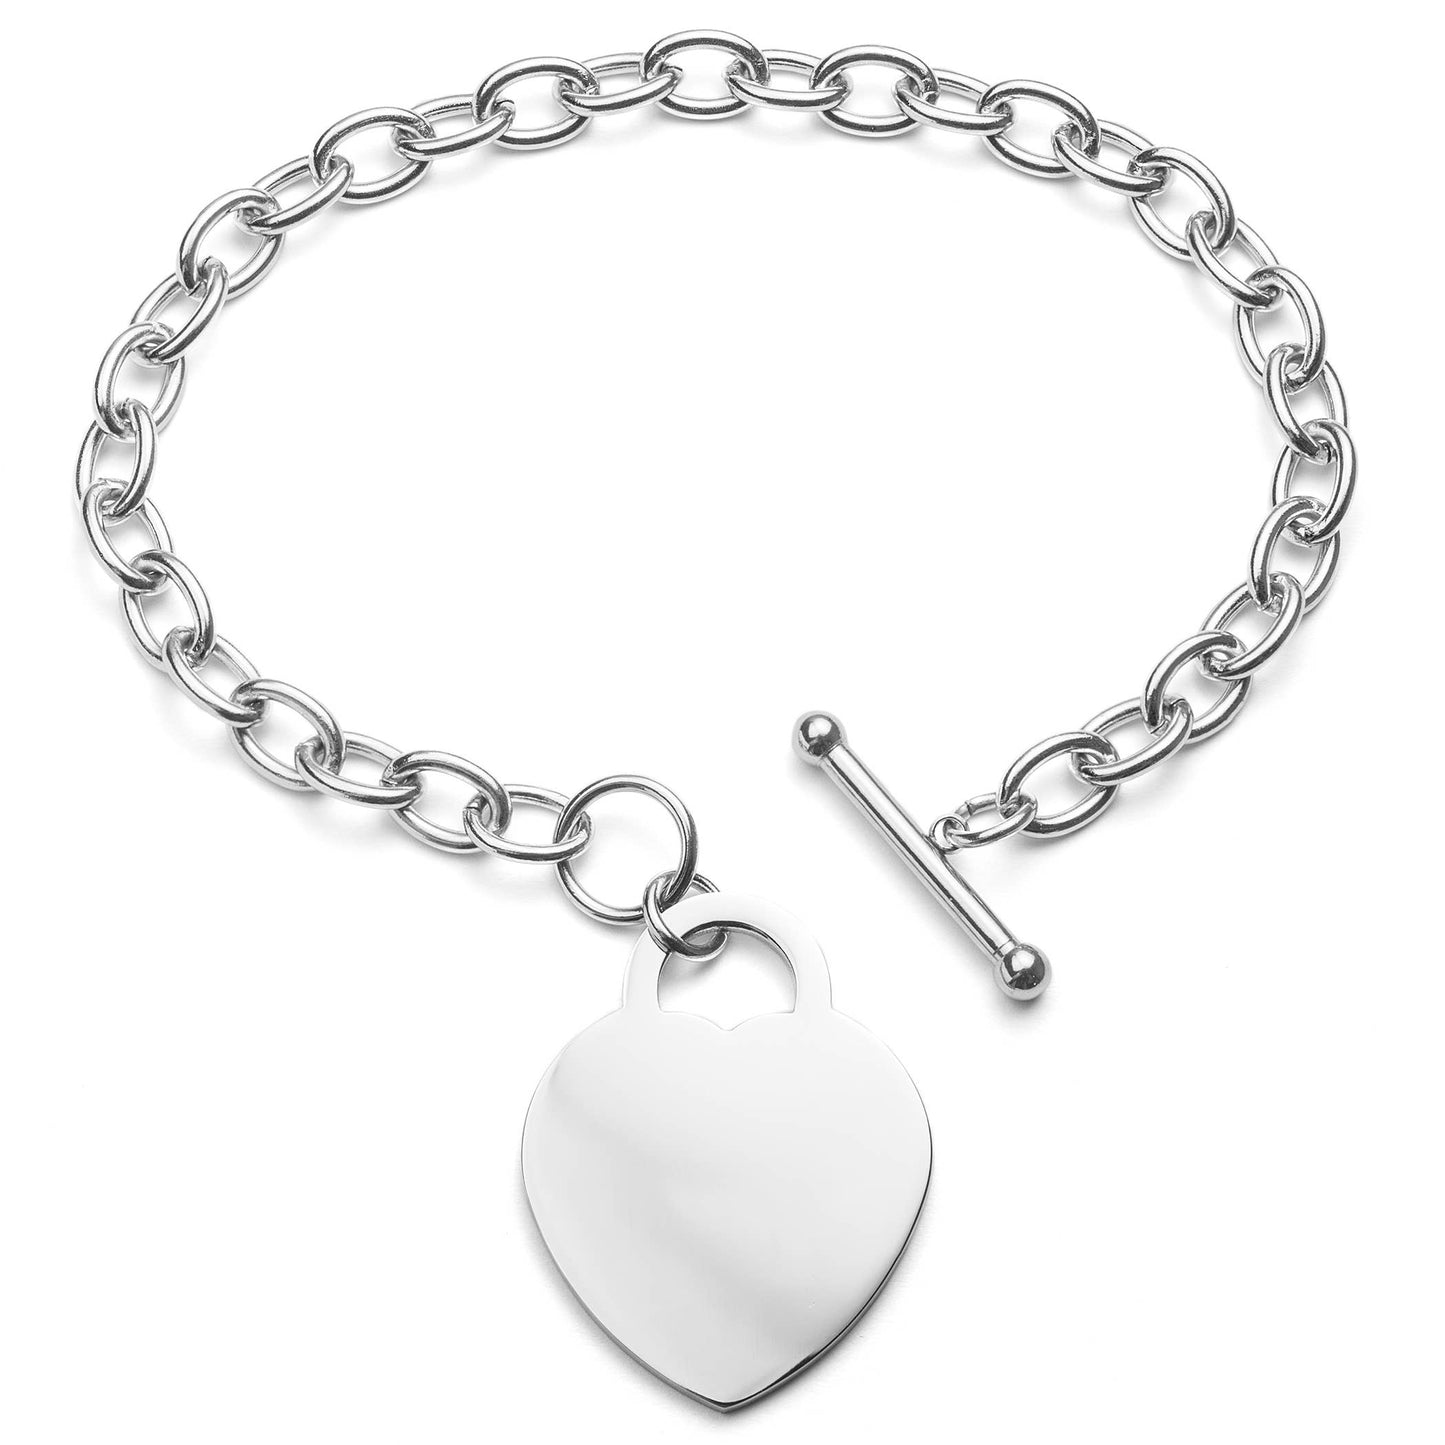 Women's Large engraving Heart Charm Bracelet